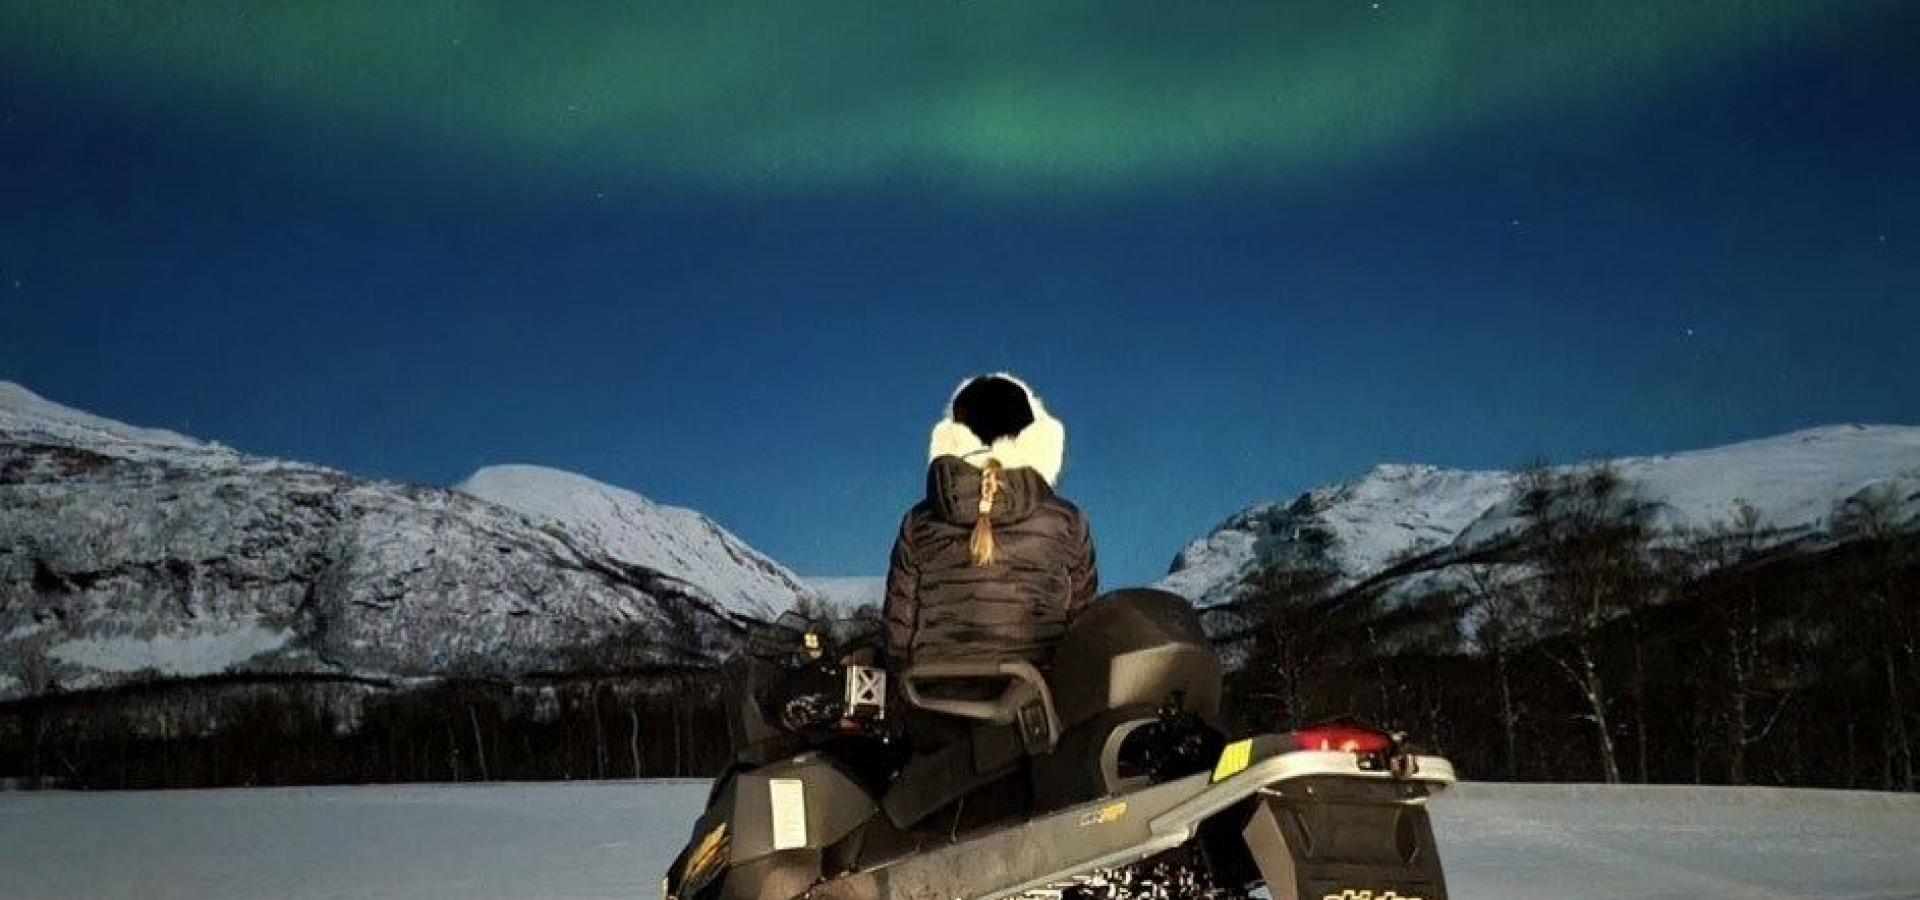 Northern lights safari on snowmobile